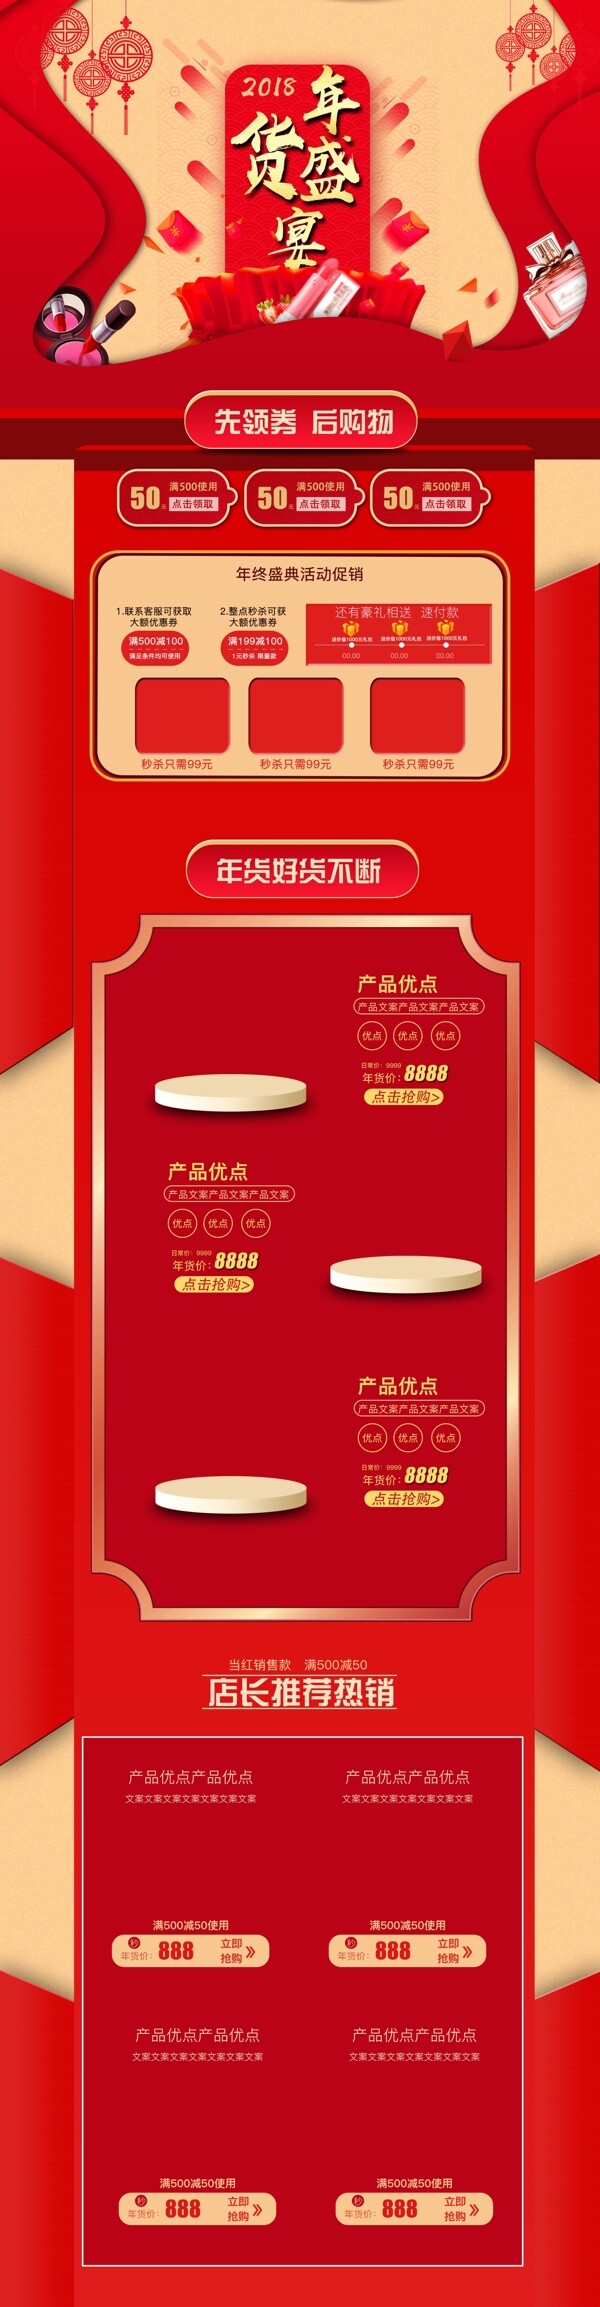 红色喜庆首页年货节促销首页活动模板